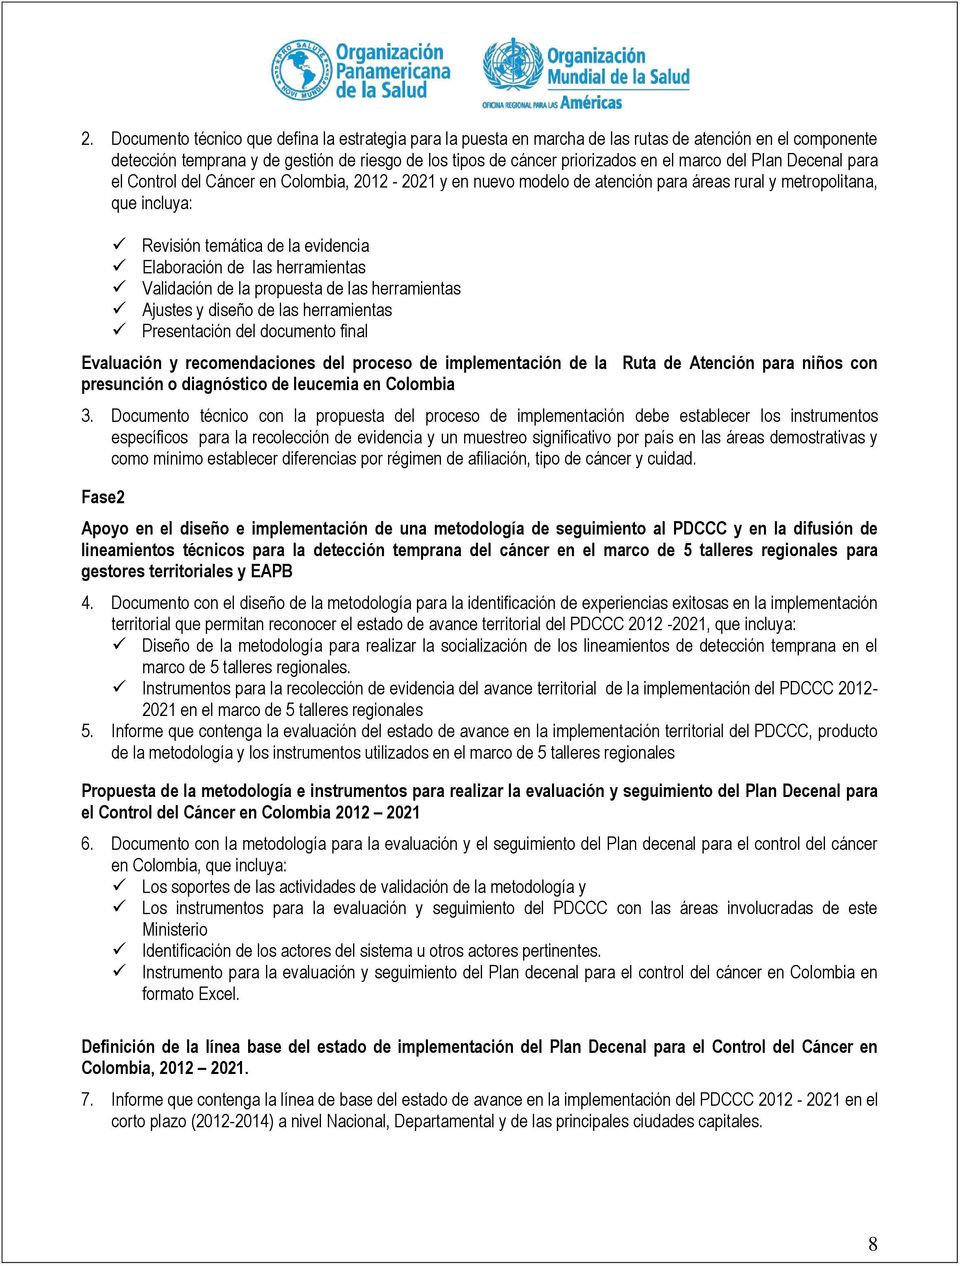 propuesta s herramientas Ajustes y s herramientas Presentación documento final Evaluación y recomendaciones proceso de implementación presunción o diagnóstico de leucemia en Colombia Ruta de Atención